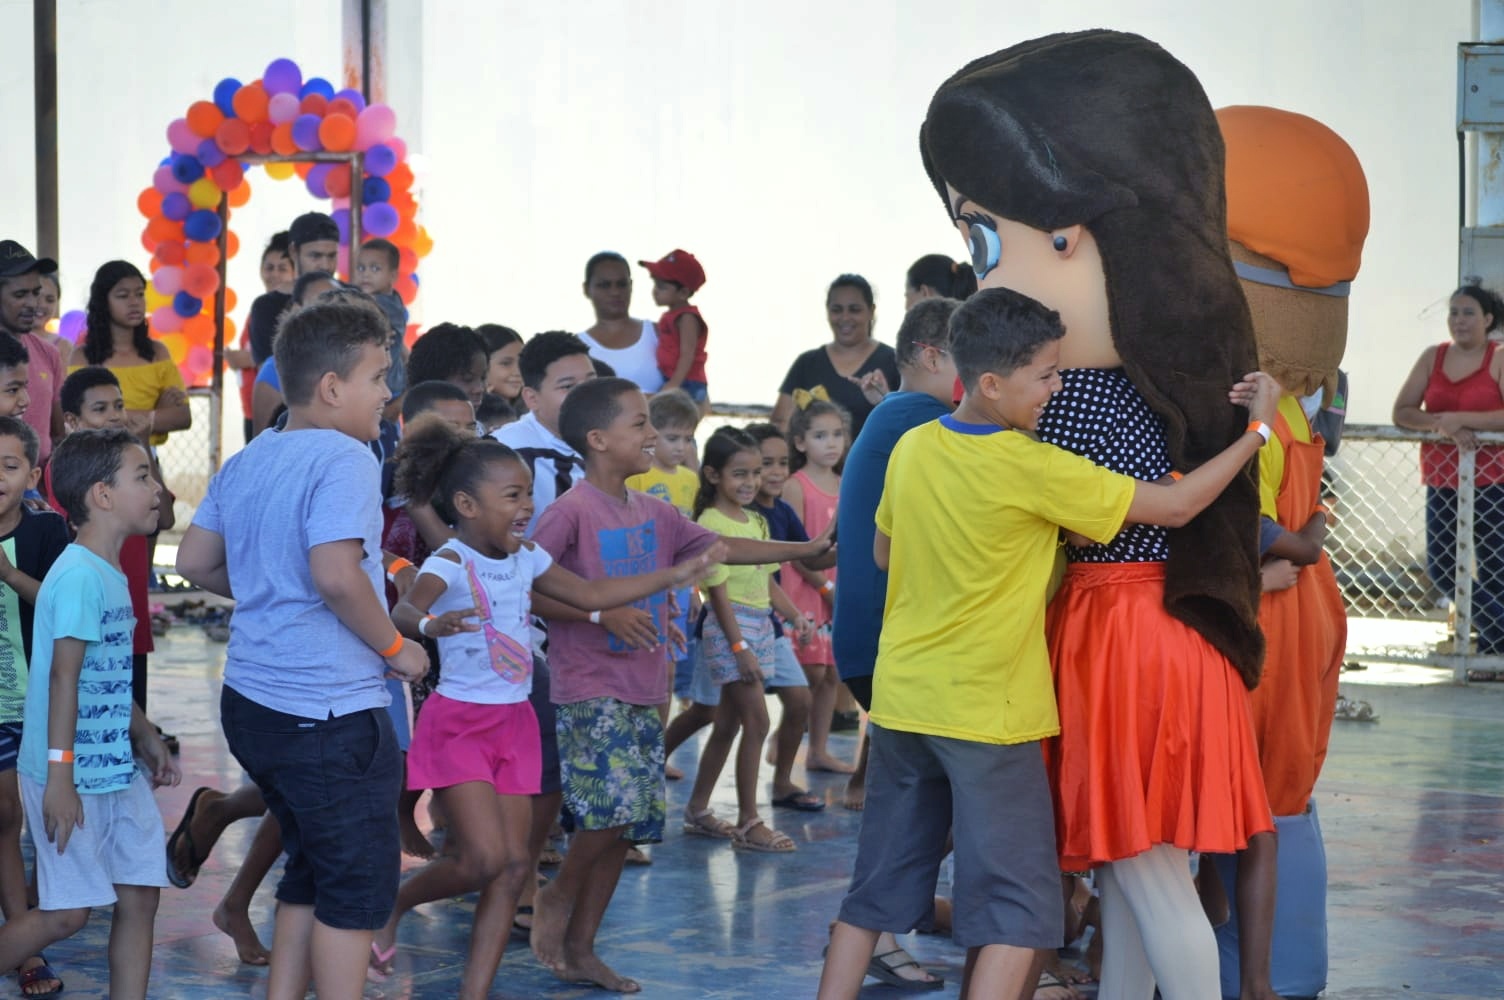 Premocil antecipou o Dia das Crianças em bairro de Serra Talhada